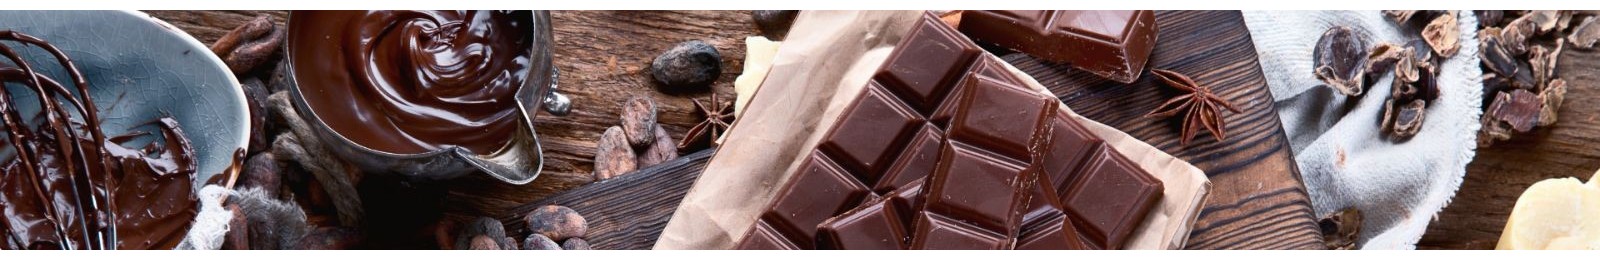 Achetez votre nougat et autres confiserie en ligne | Origins Chocolat